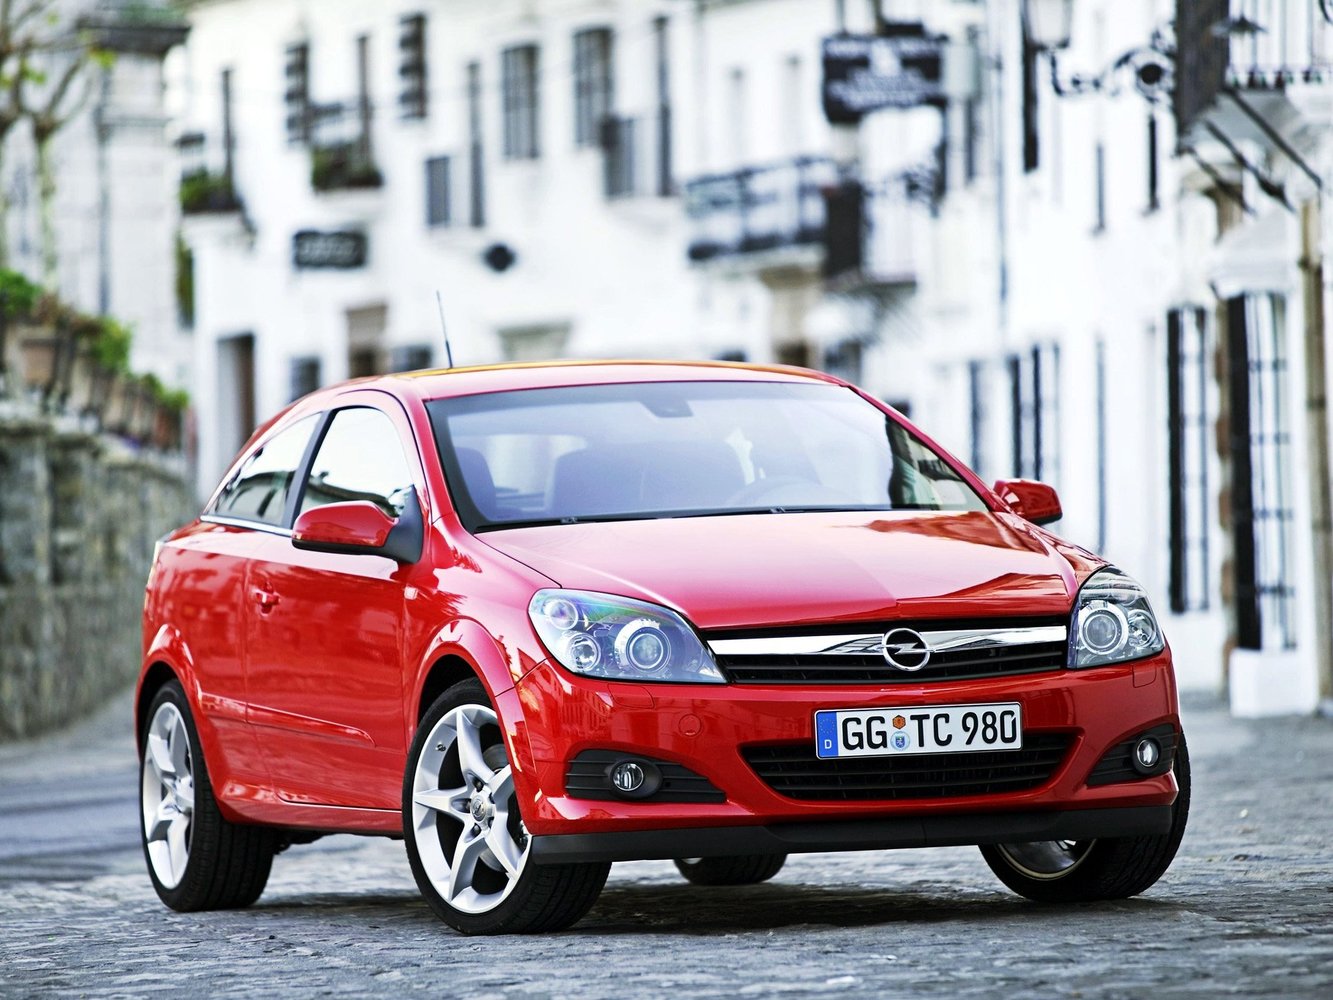 хэтчбек 3 дв. Opel Astra 2004 - 2006г выпуска модификация 1.2 MT (90 л.с.)